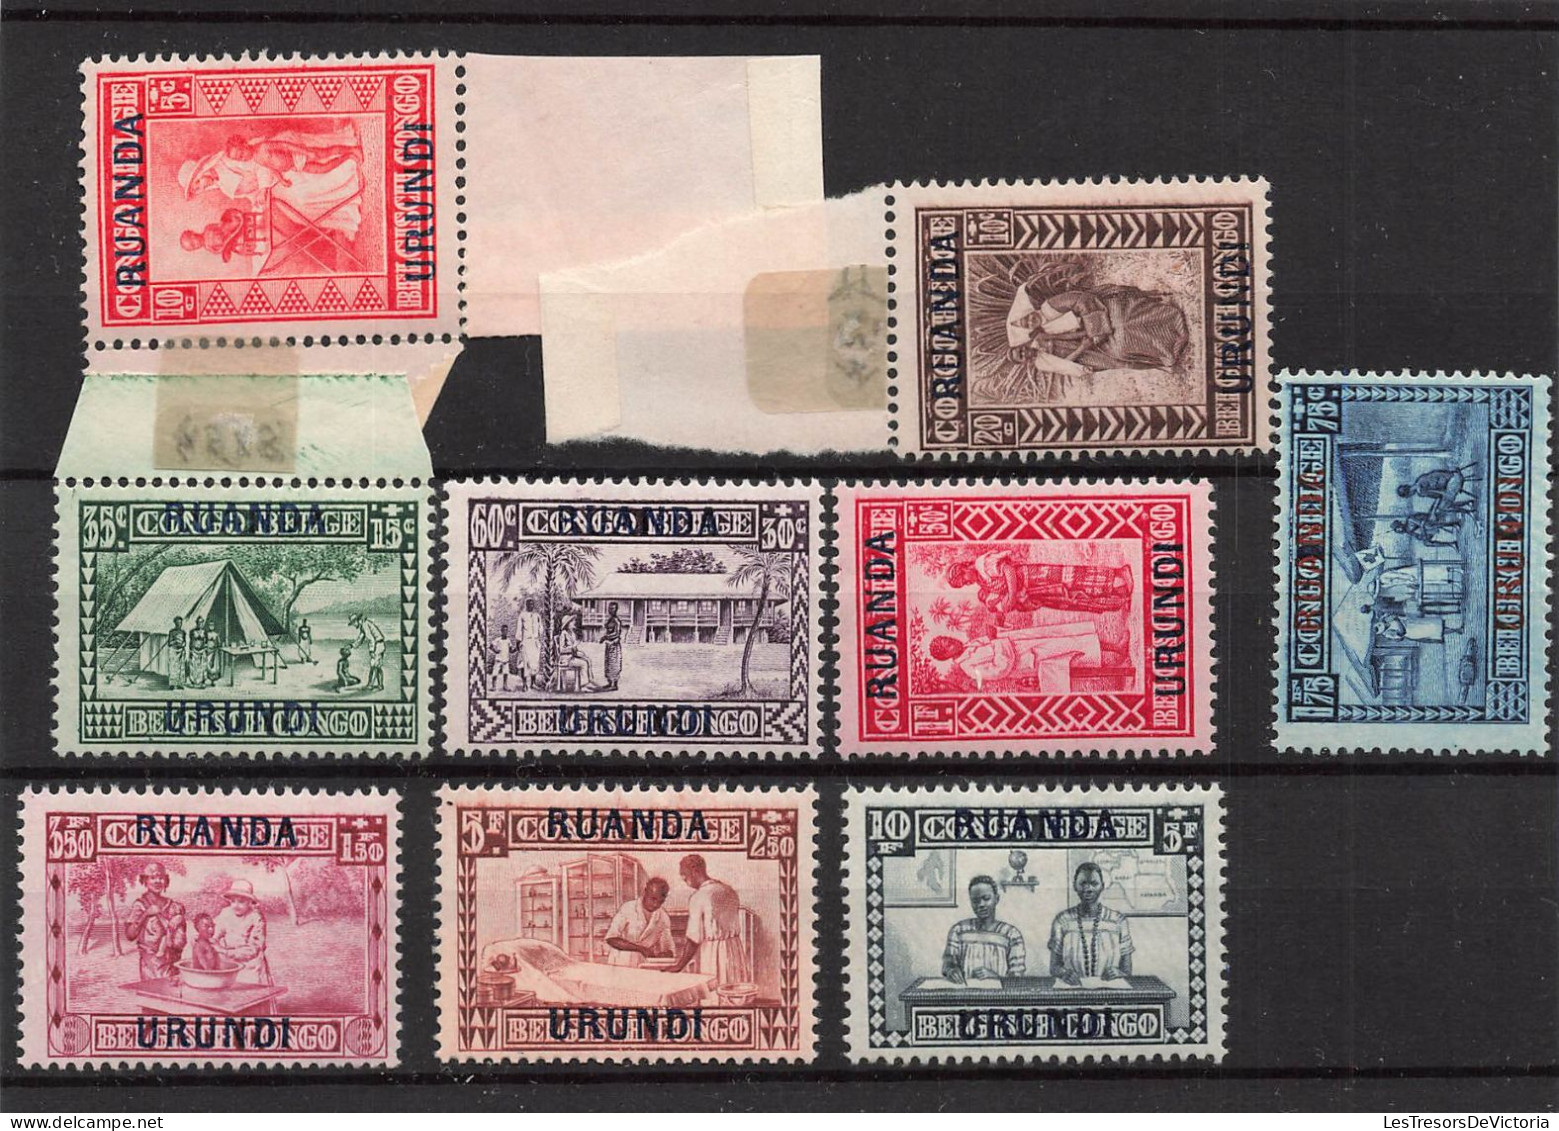 Timbres - Ruanda Urundi - 1930 - COB 81/89*Goutte De Lait Surchargé - Cote75 - Nuevos